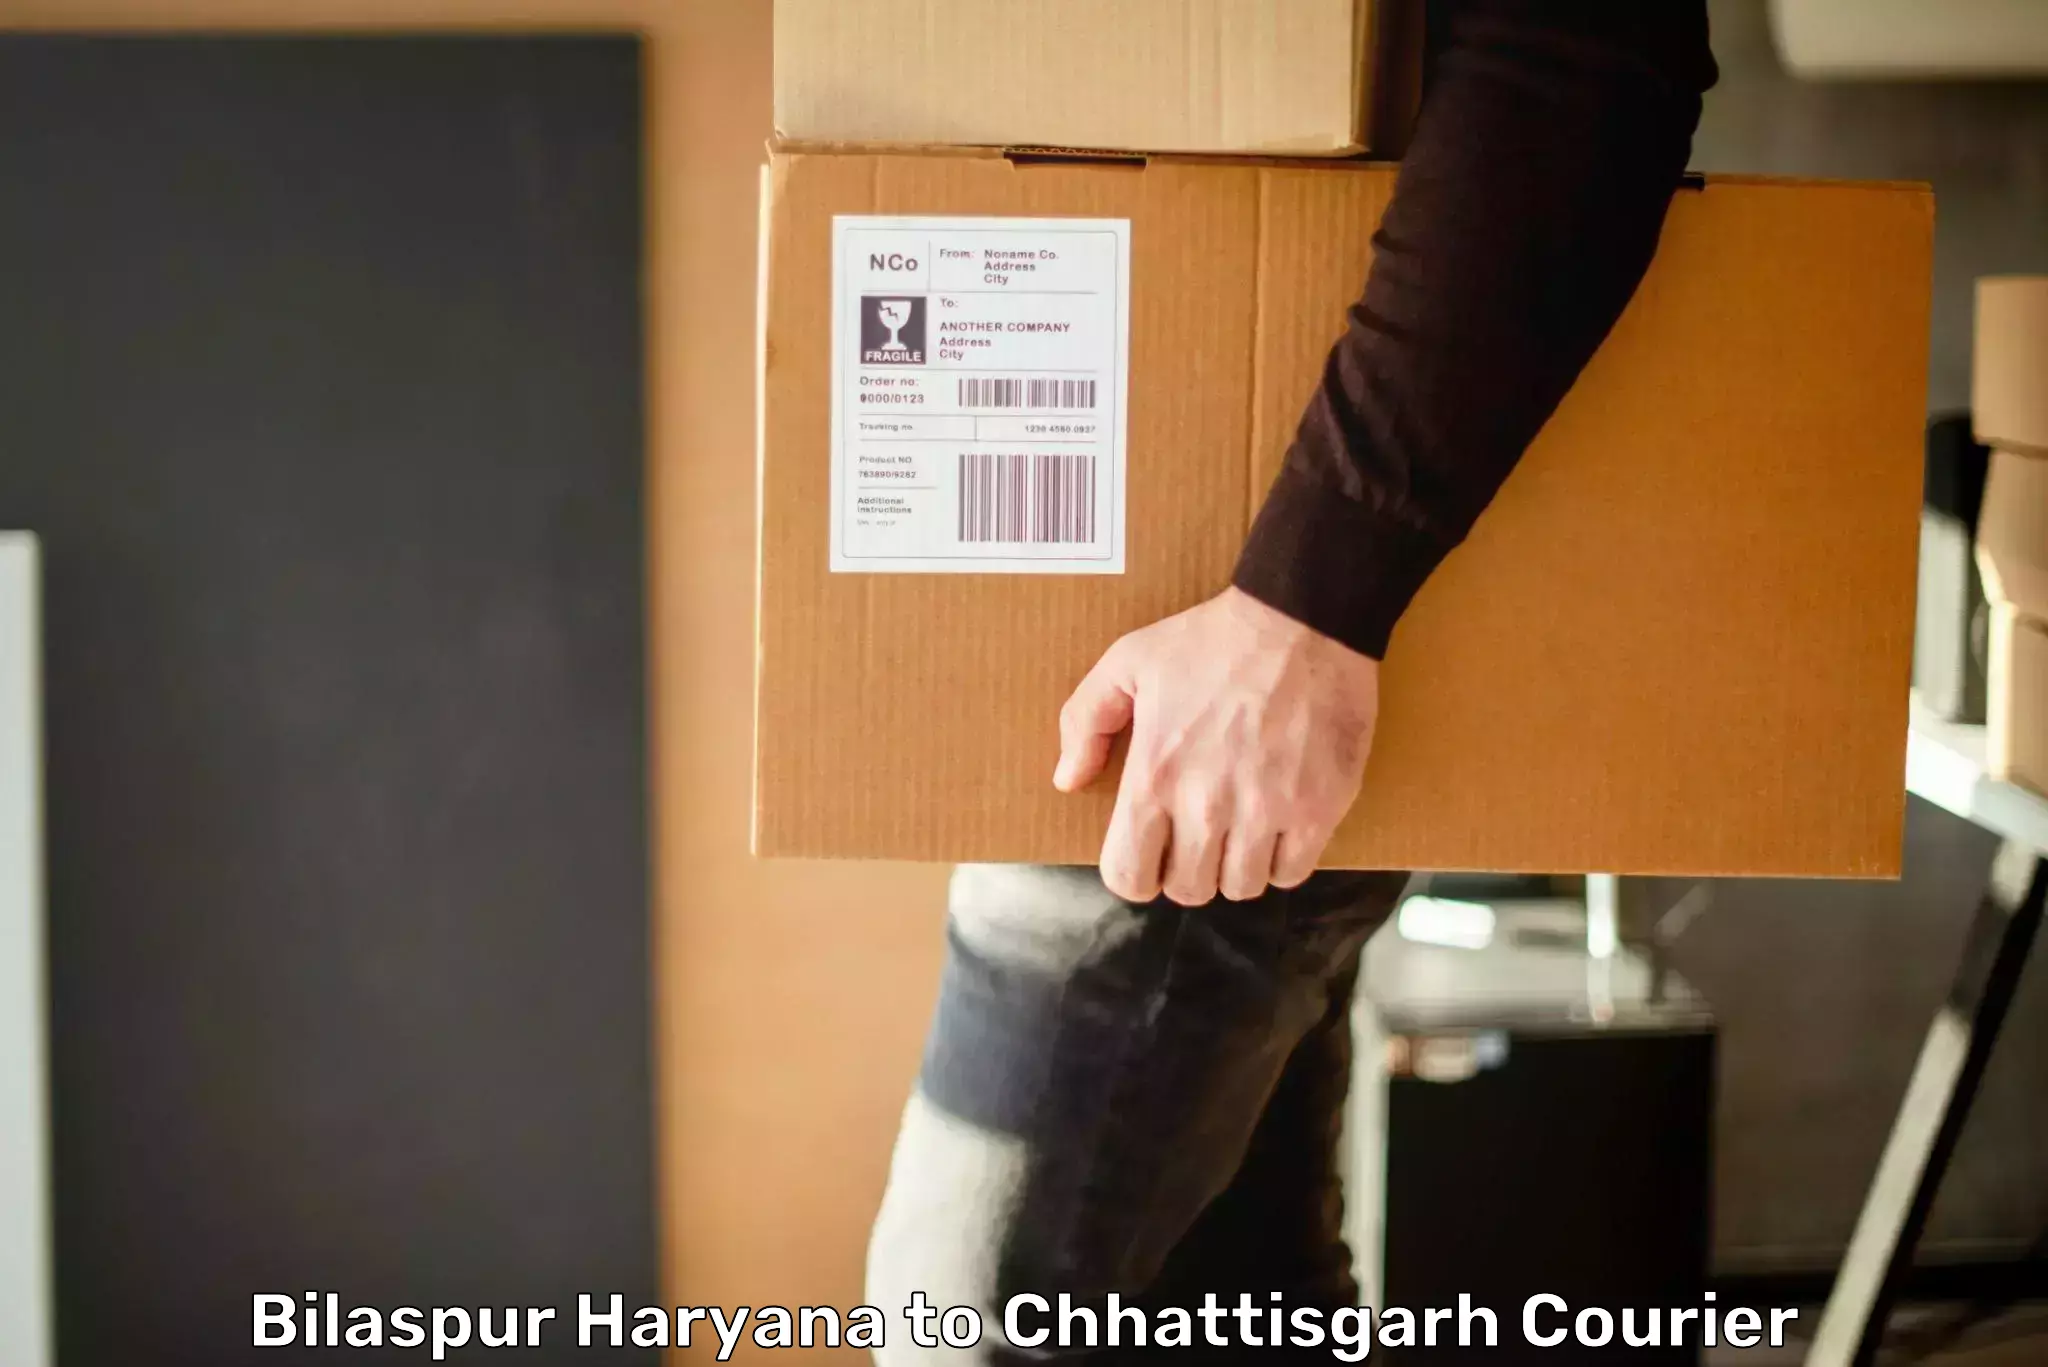 Premium delivery services Bilaspur Haryana to Chhattisgarh